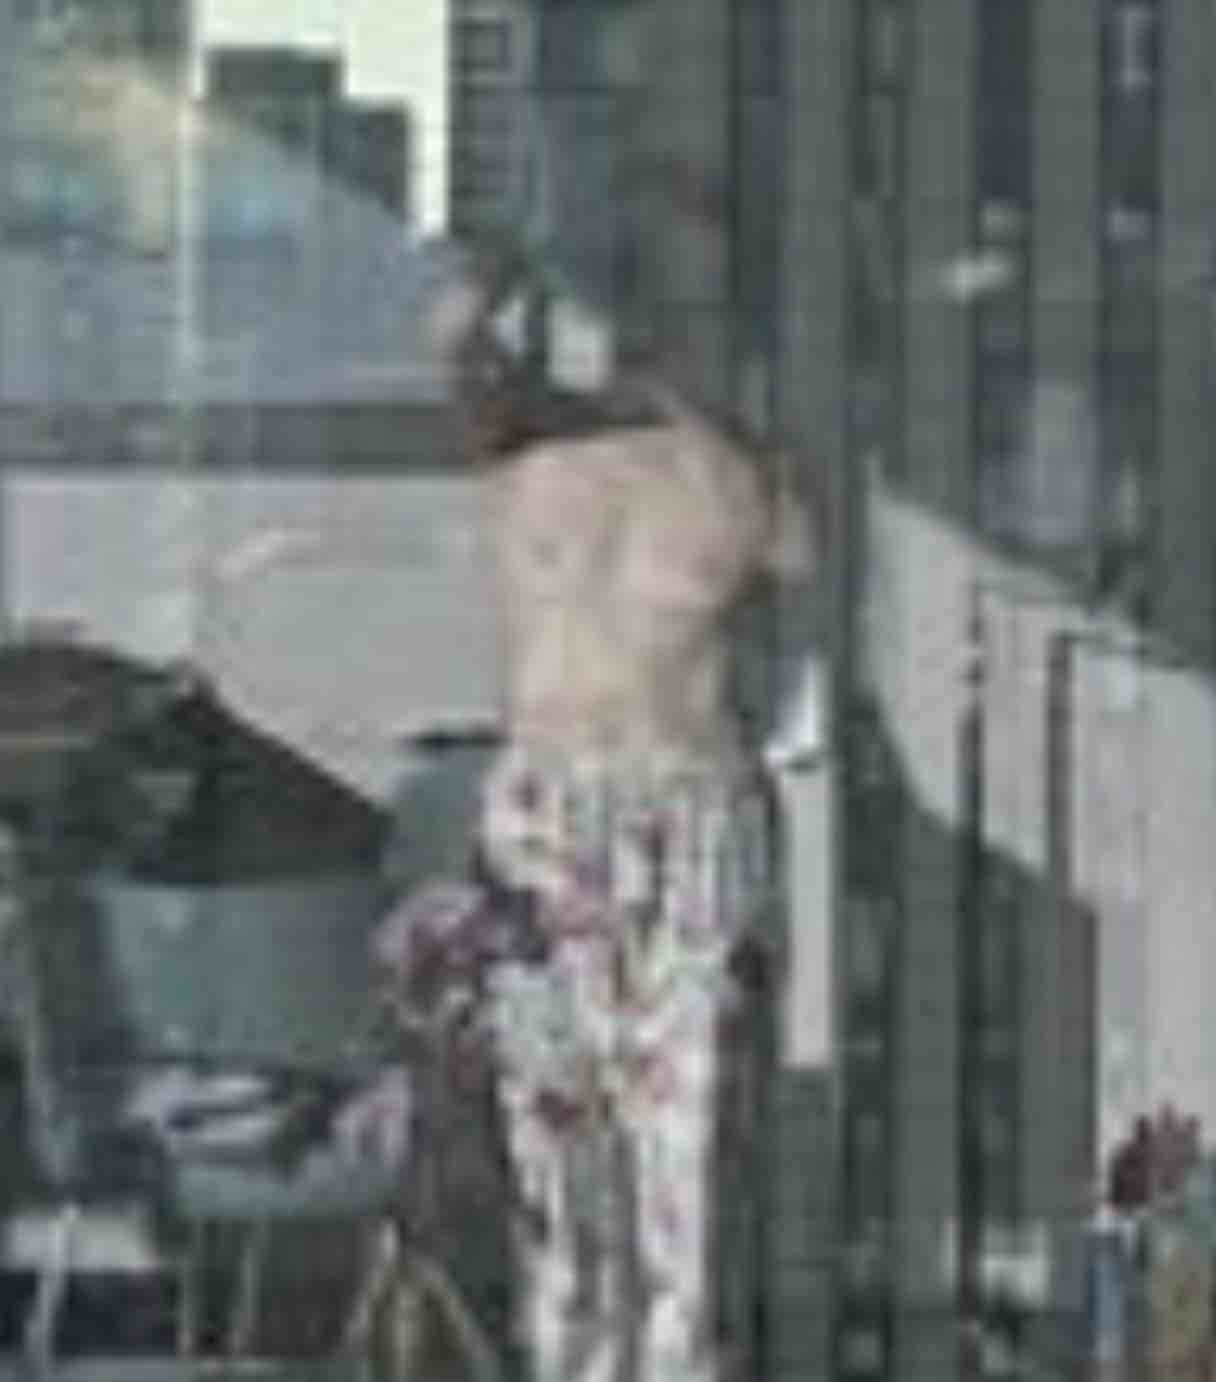 松居一代、お◯ぱい露出の裸写真公開でアメブロ１位に「裸体に感謝」船越英一郎と騒動